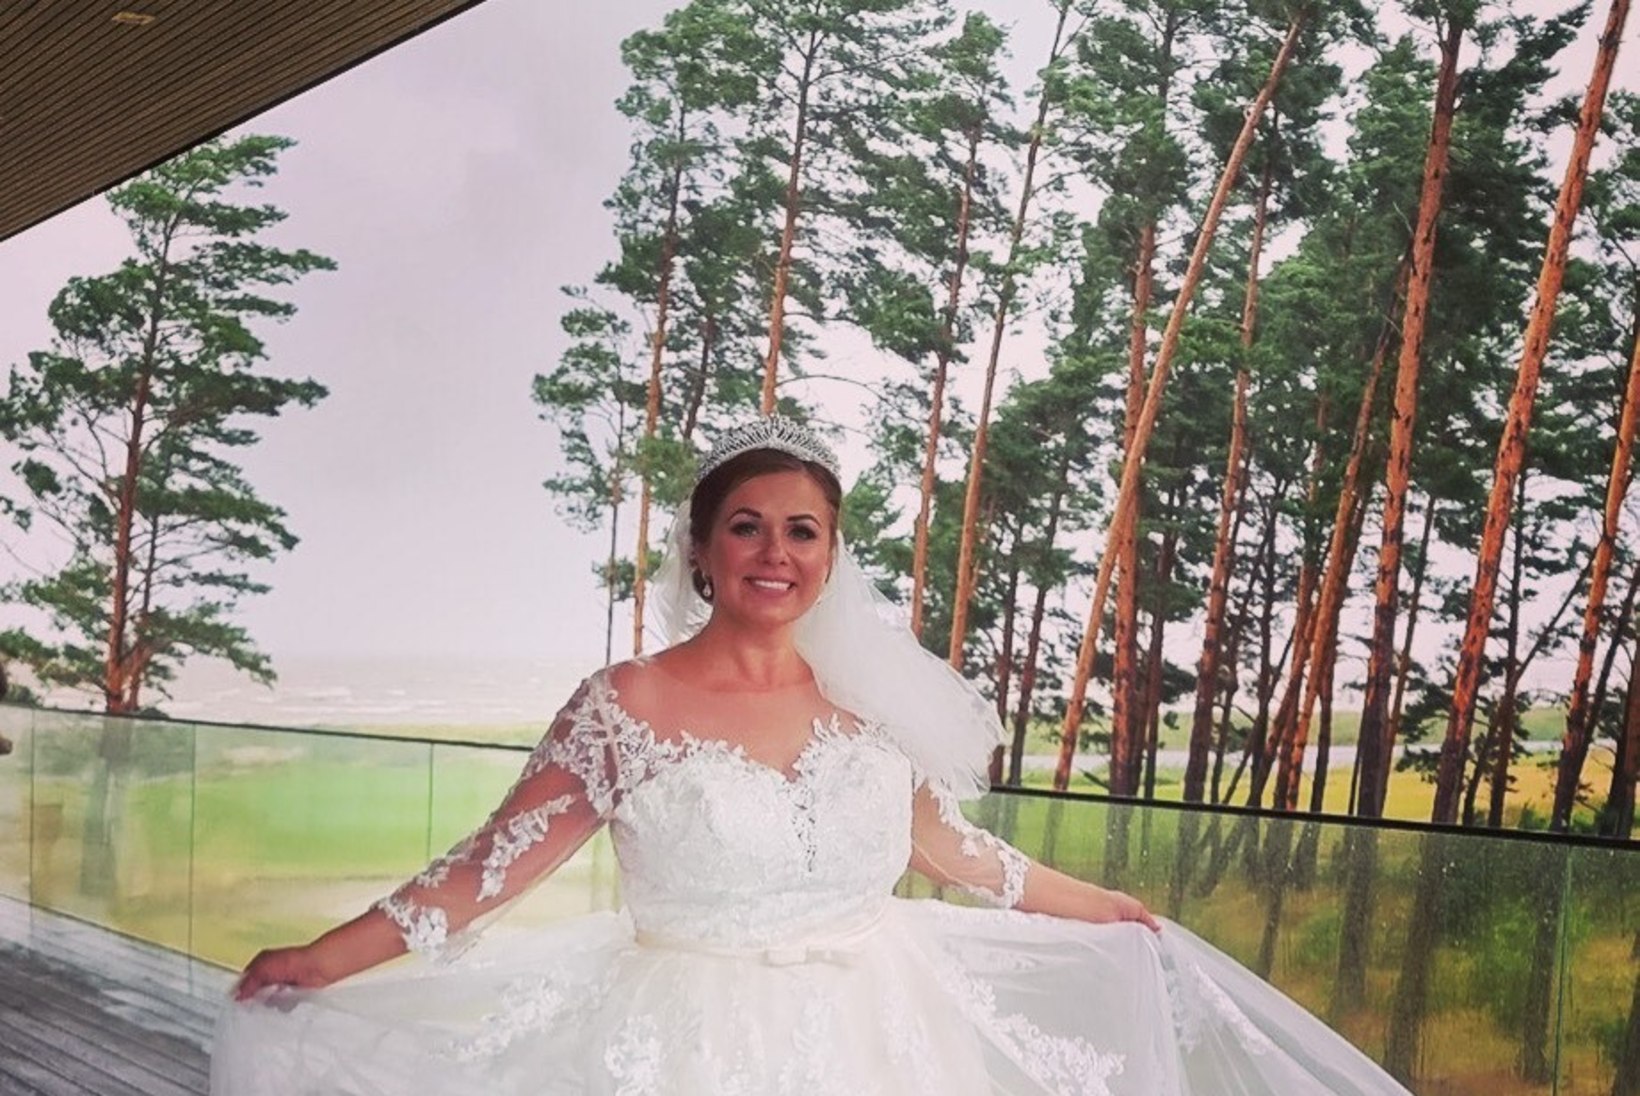 PULMAVIDEO | Merlyn Uusküla-Hein pulmaeelarvest: tutvustega säästsime ligi 15 000 eurot! 